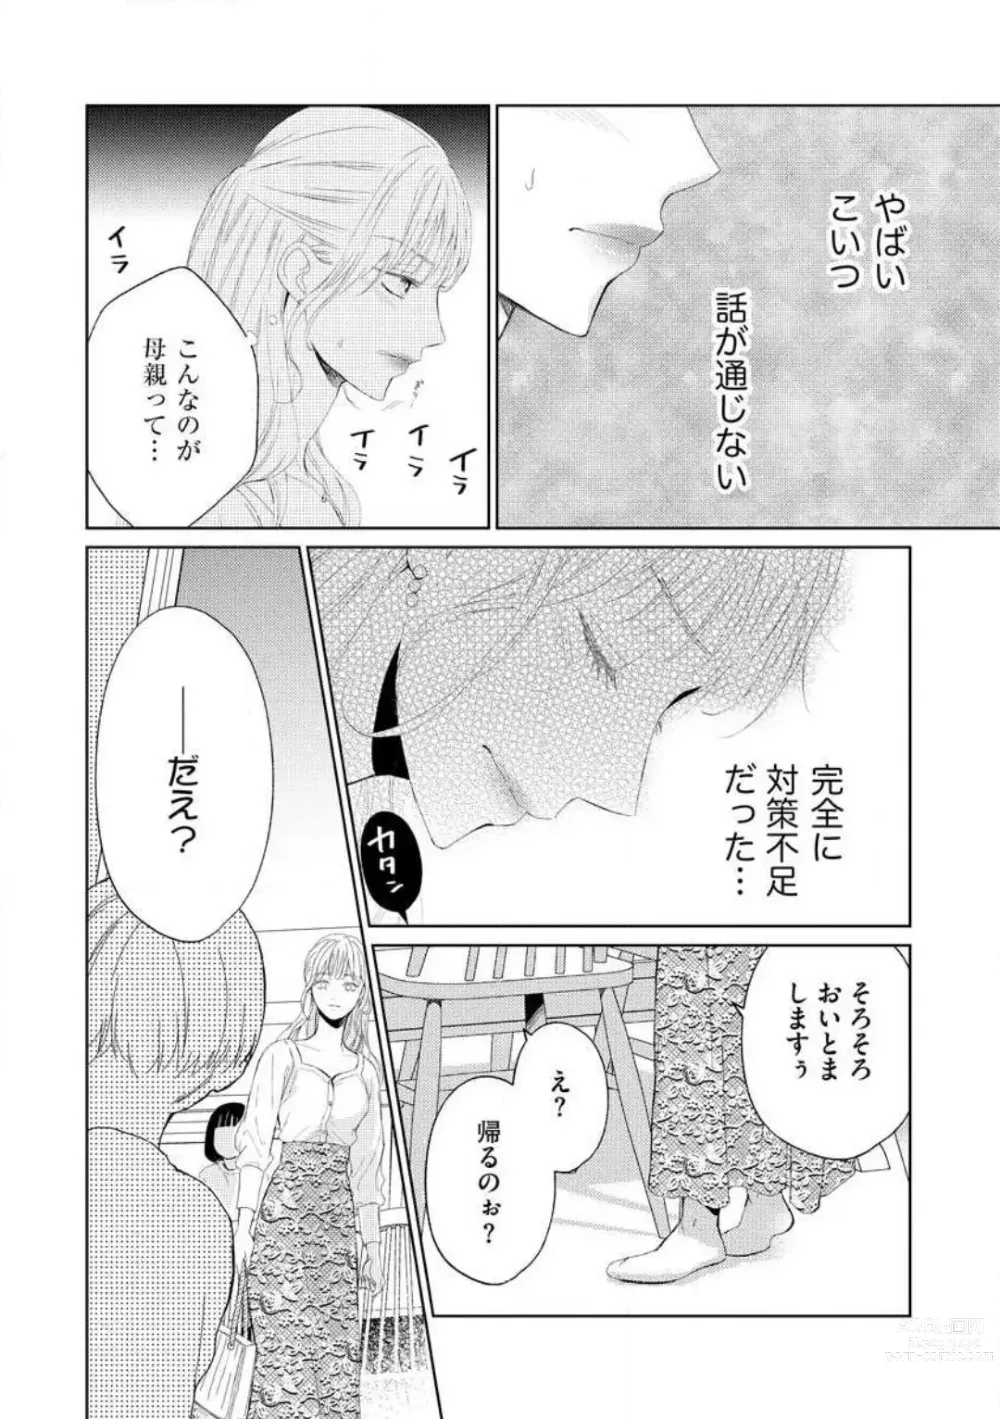 Page 125 of manga 29-sai no Fu Junai 1-5